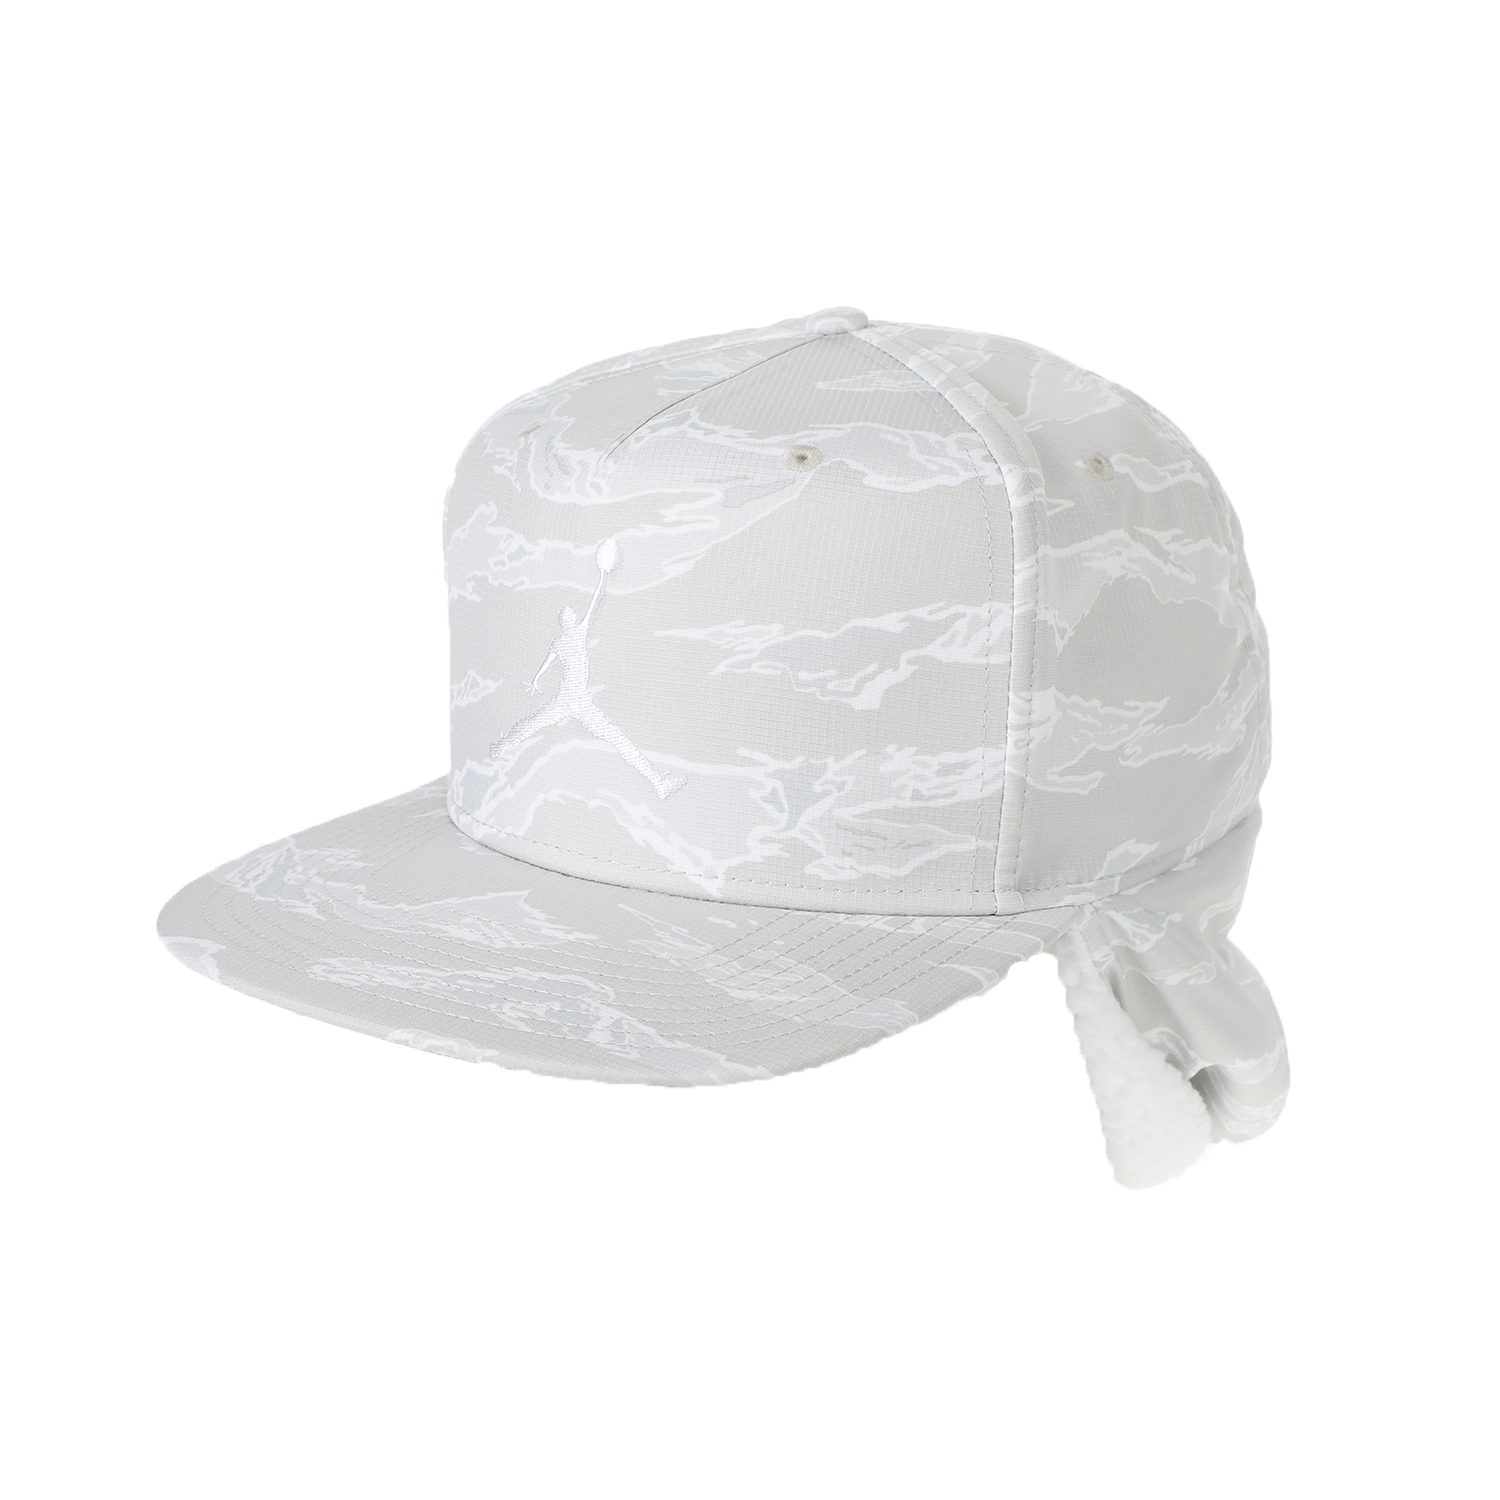 Γυναικεία/Αξεσουάρ/Καπέλα/Αθλητικά NIKE - Unisex καπέλο NIKE JORDAN PRO SHIELD λευκό